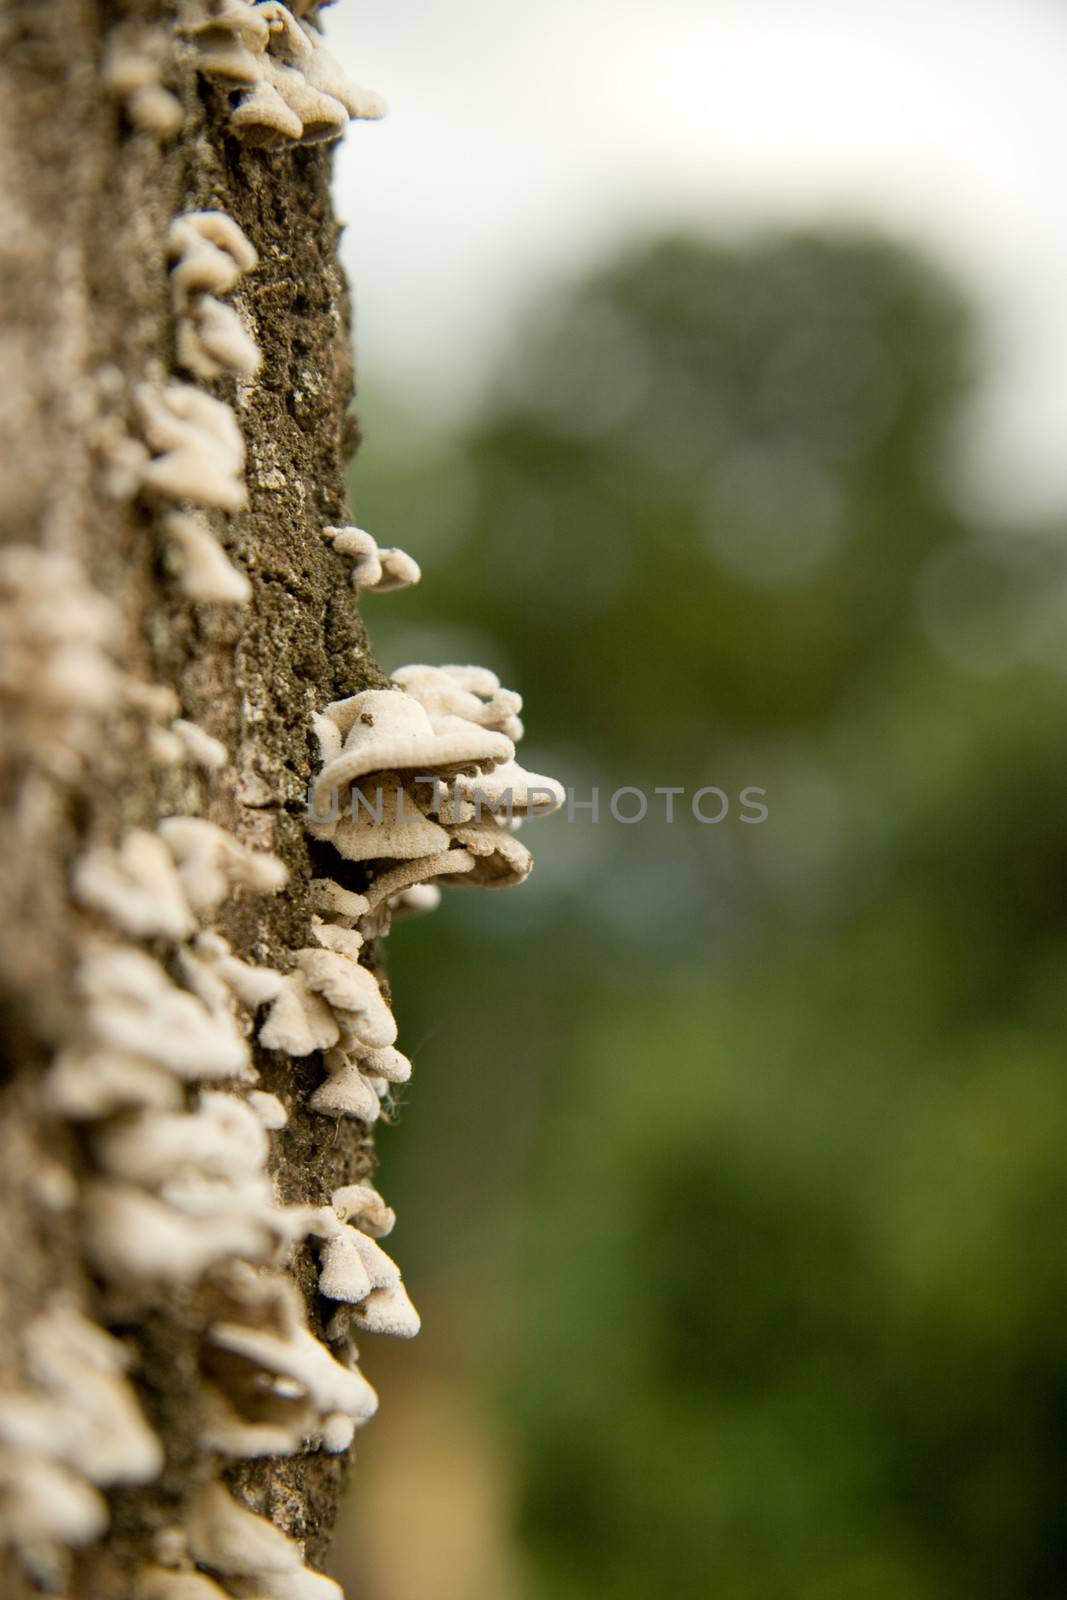 Wild mushrooms by CelsoDiniz